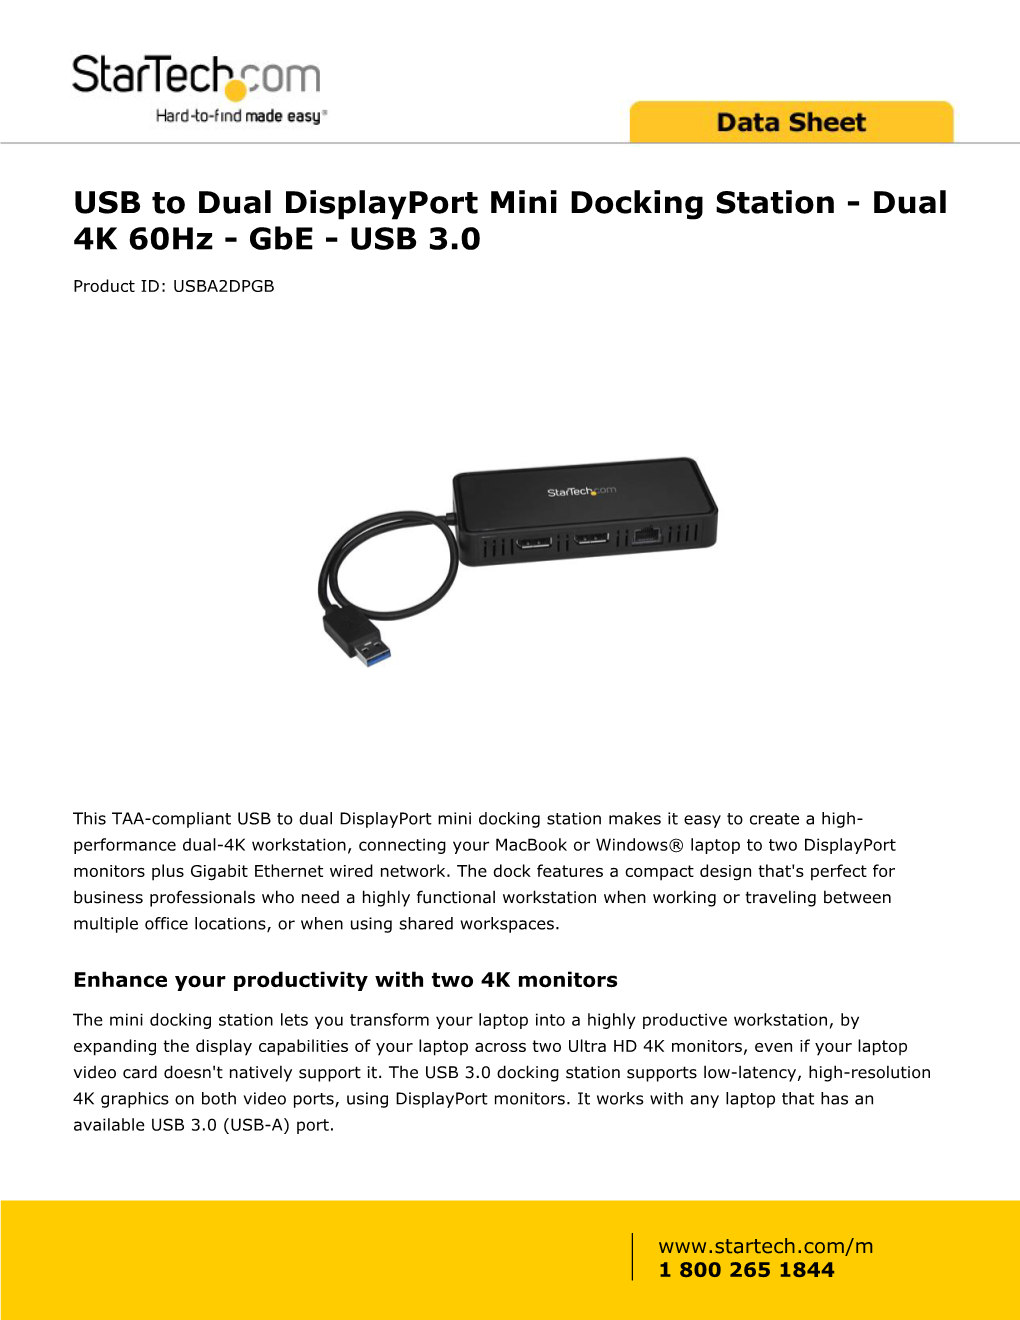 USB to Dual Displayport Mini Docking Station - Dual 4K 60Hz - Gbe - USB 3.0